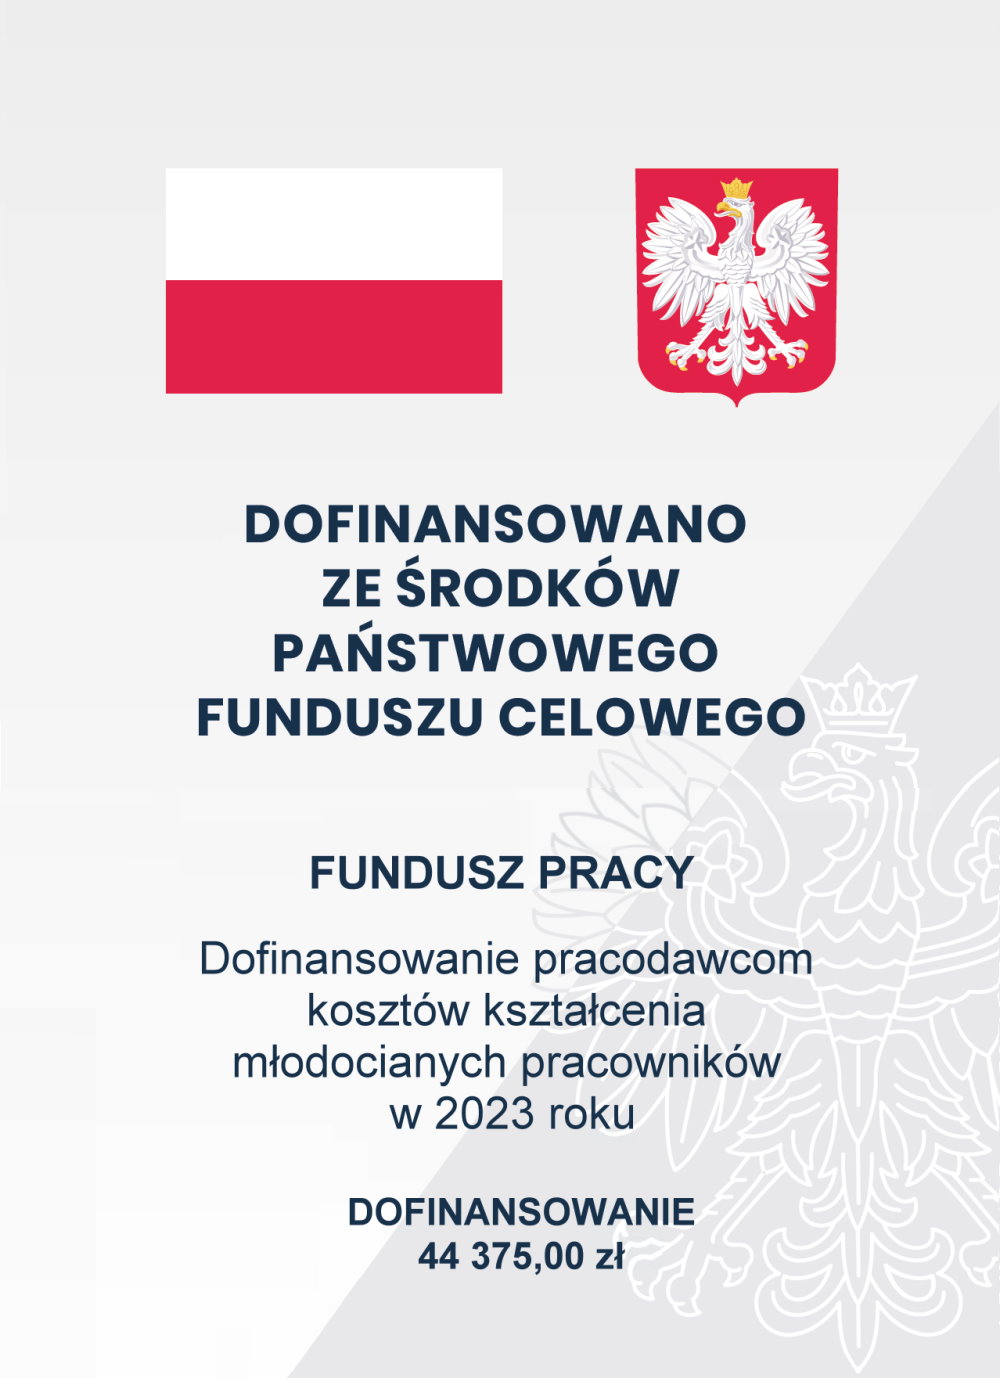 Flaga i herb Polski. Poniżej napis: Dofinansowano ze środków państwowego funduszu celowego Fundusz pracy Dofinansowanie pracodawcom kosztów kształcenia młodocianych pracowników w 2023 roku